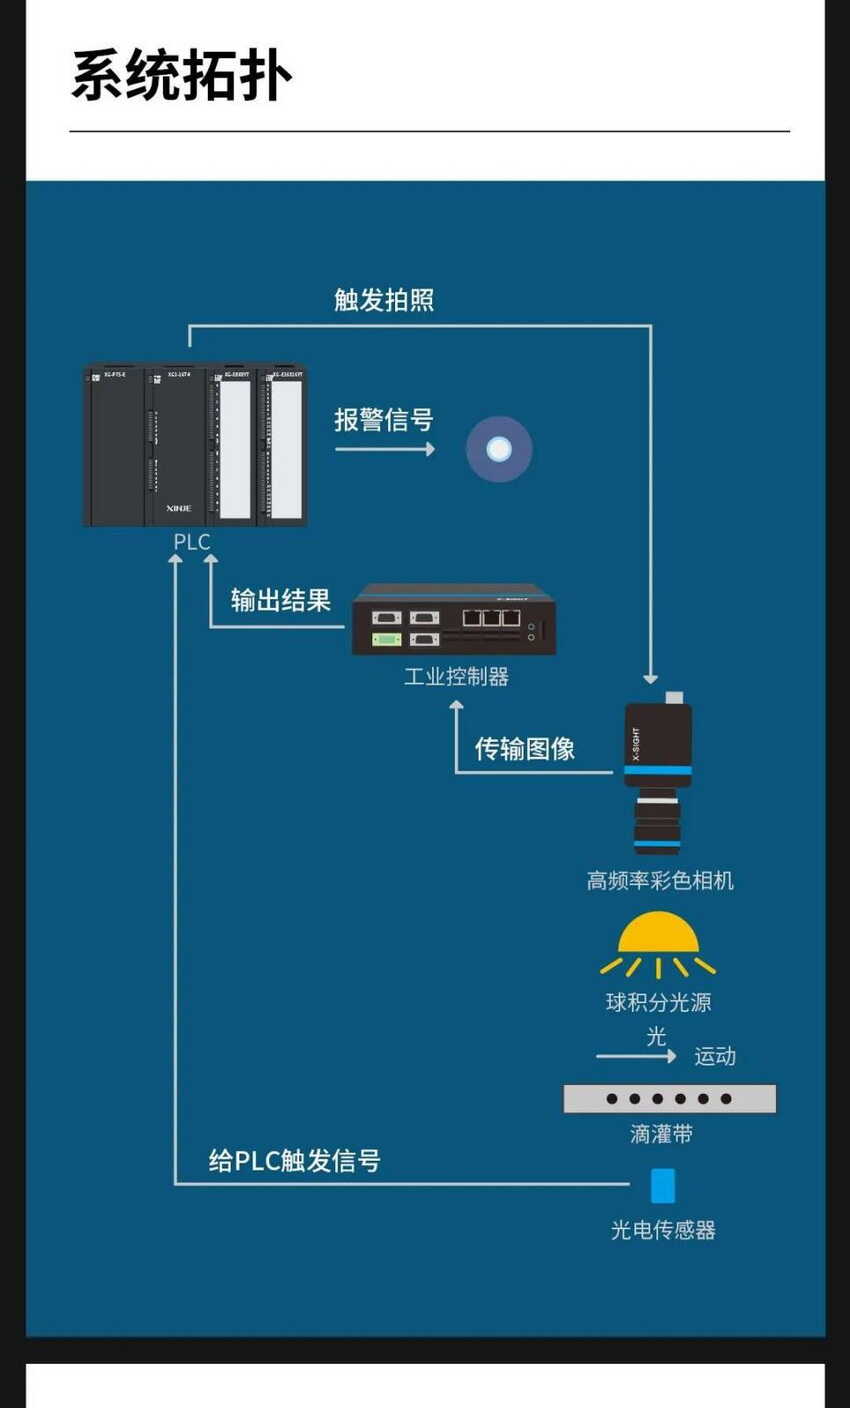 信捷系统运用于贴片式滴灌带检测系统